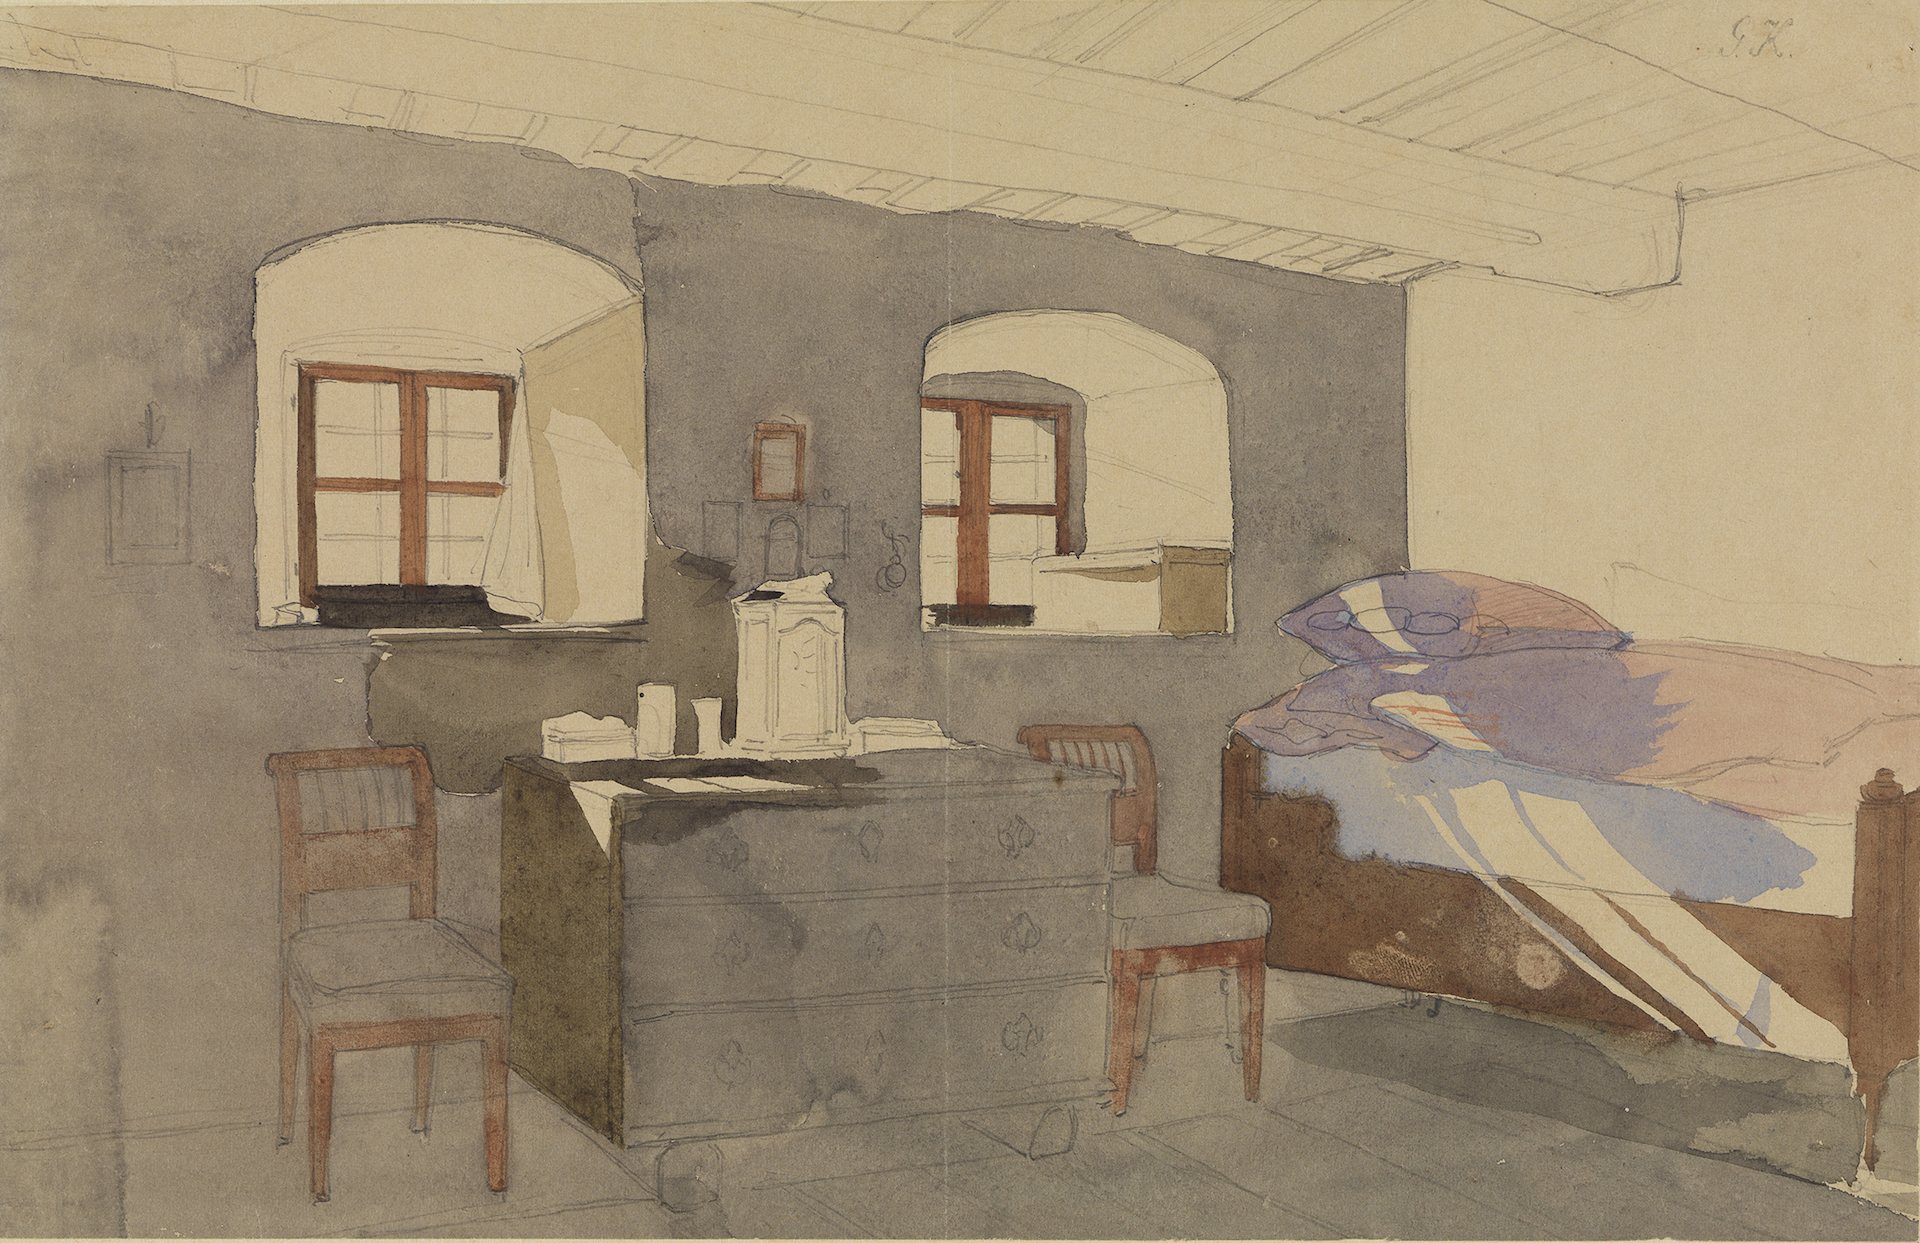 Abbildung von Georg Friedrich Kerstings Schlafstube mit einfallendem Licht